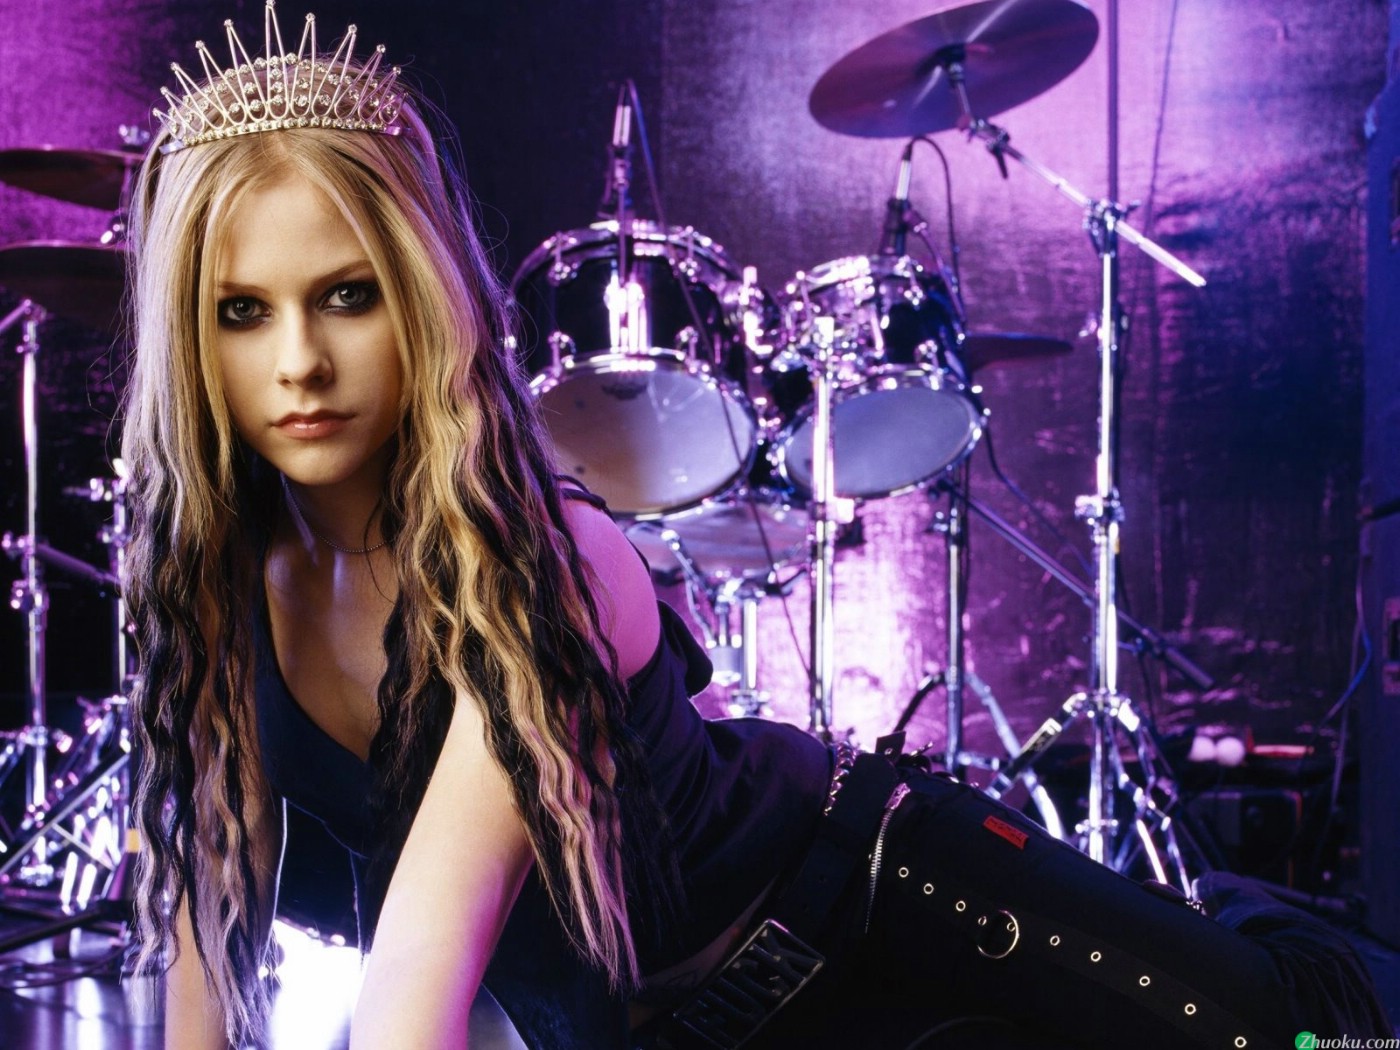 壁纸1400x1050艾薇儿 Avril Lavigne 壁纸122壁纸 艾薇儿 Avril Lavigne壁纸 艾薇儿 Avril Lavigne图片 艾薇儿 Avril Lavigne素材 明星壁纸 明星图库 明星图片素材桌面壁纸